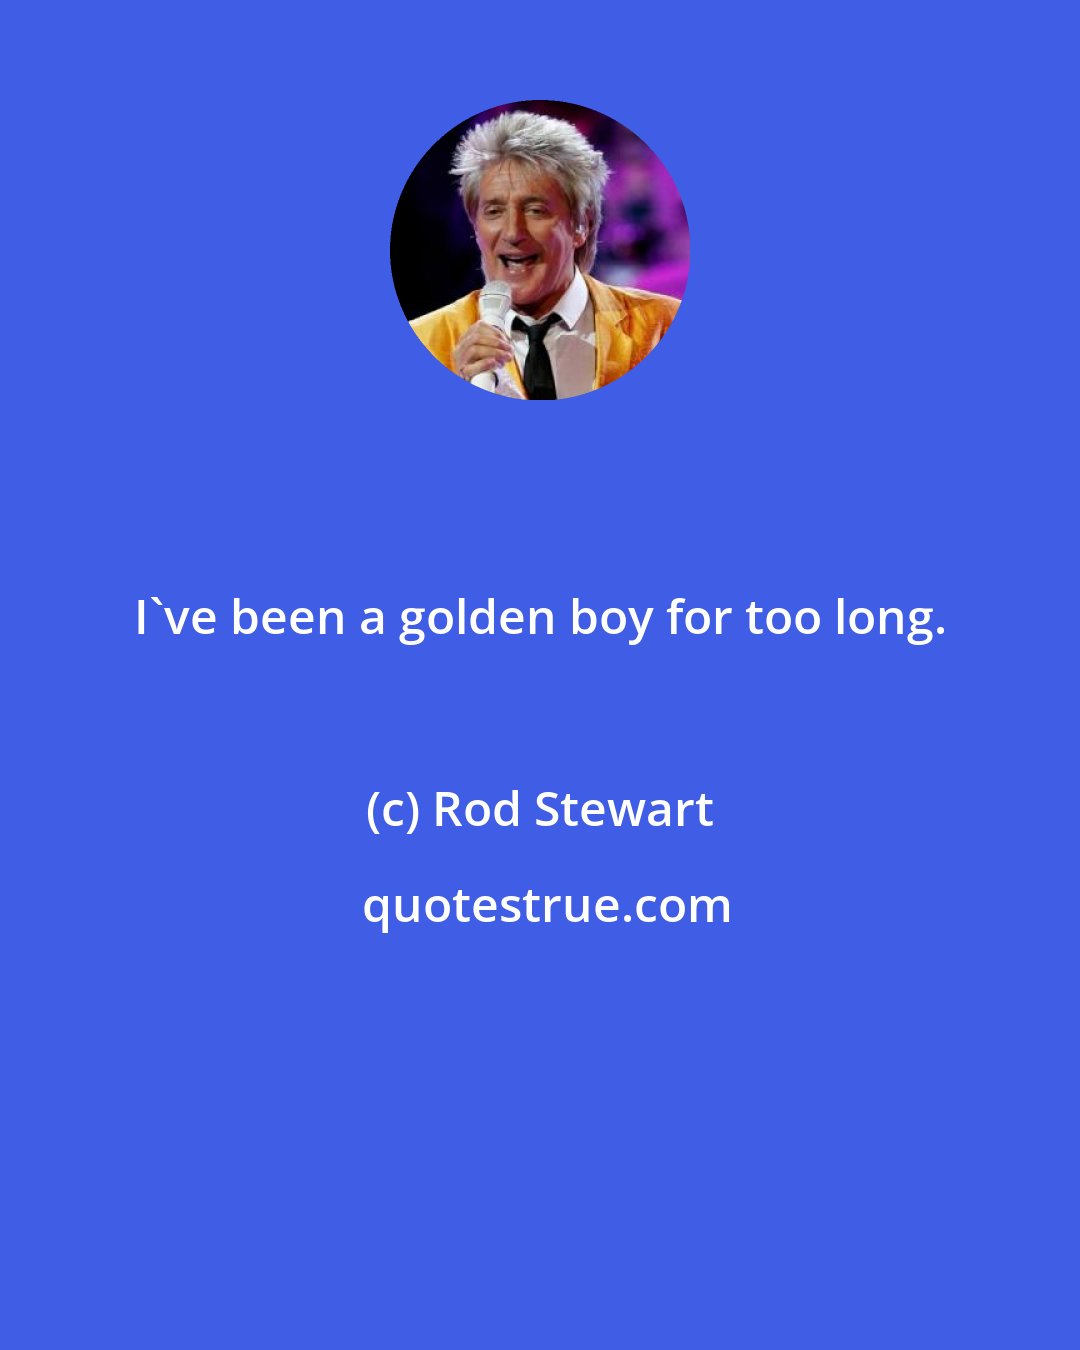 Rod Stewart: I've been a golden boy for too long.